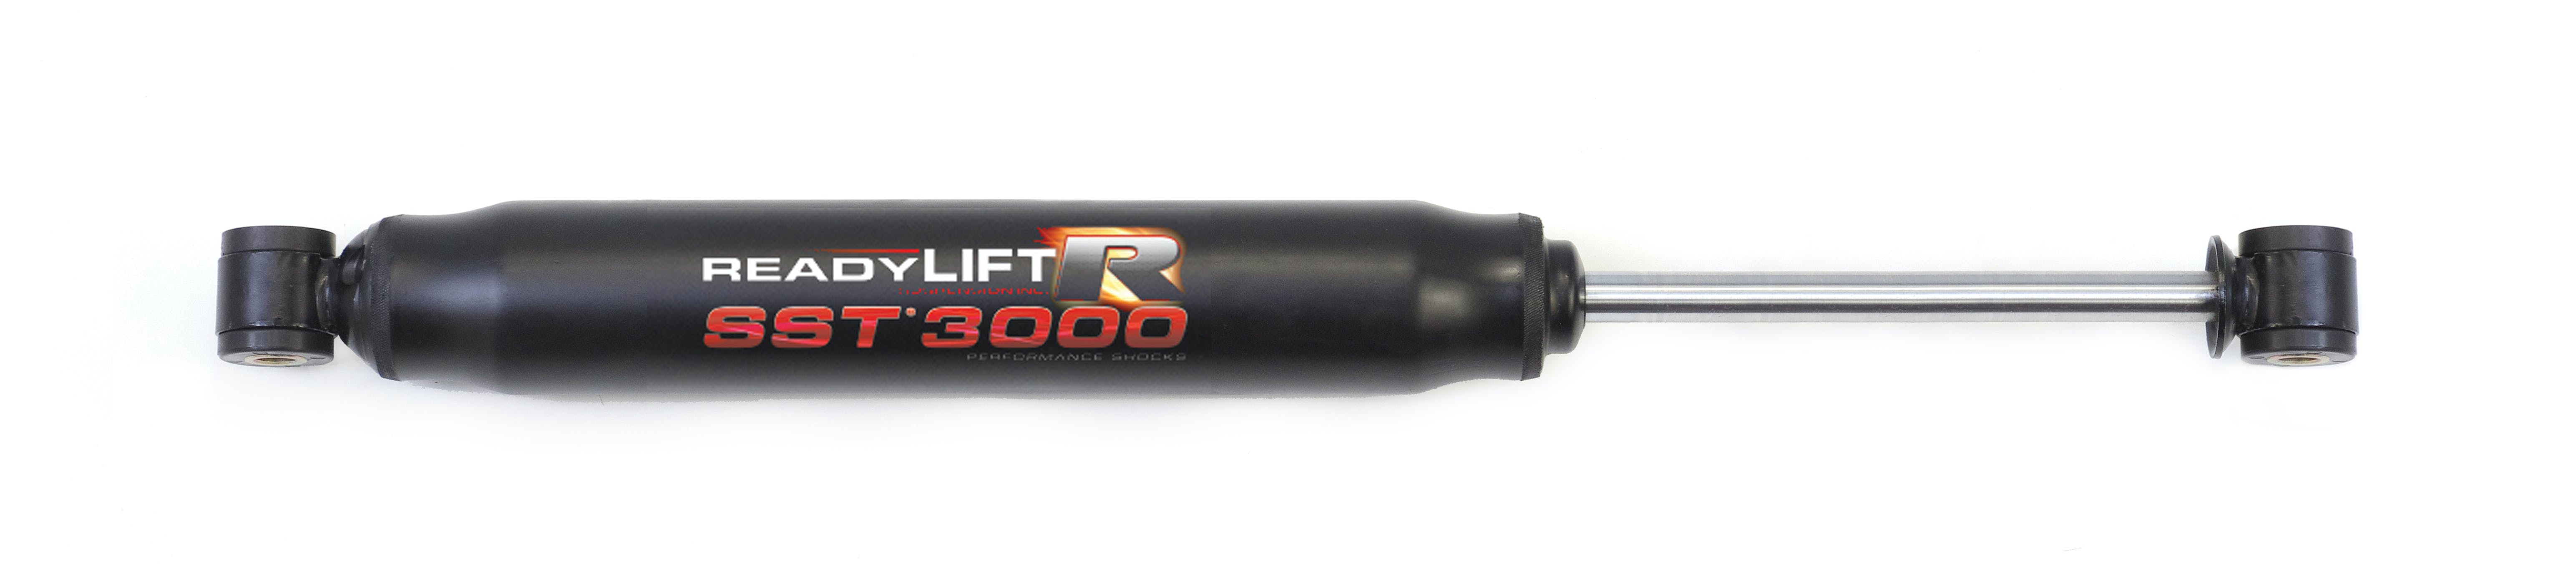 ReadyLIFT 93-3411R SST 3000 Rear Shocks - 4.0" Lift